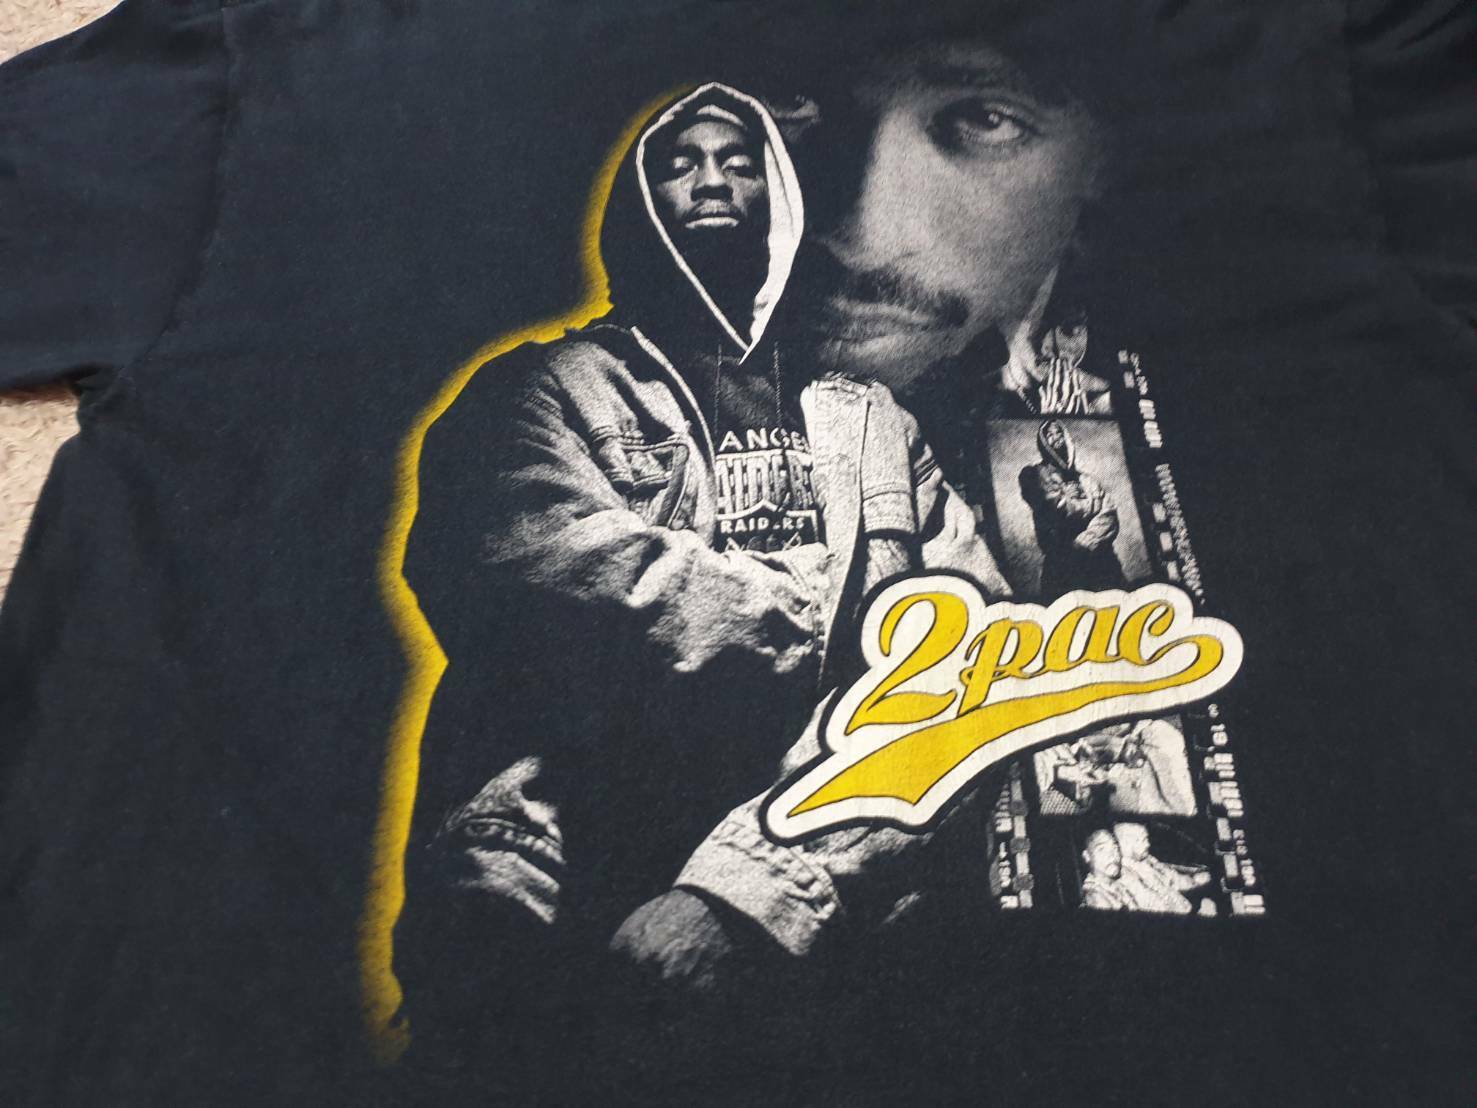 Rare vintage tupac 2pac Shakur bootleg hiphop T-shirt… - Gem